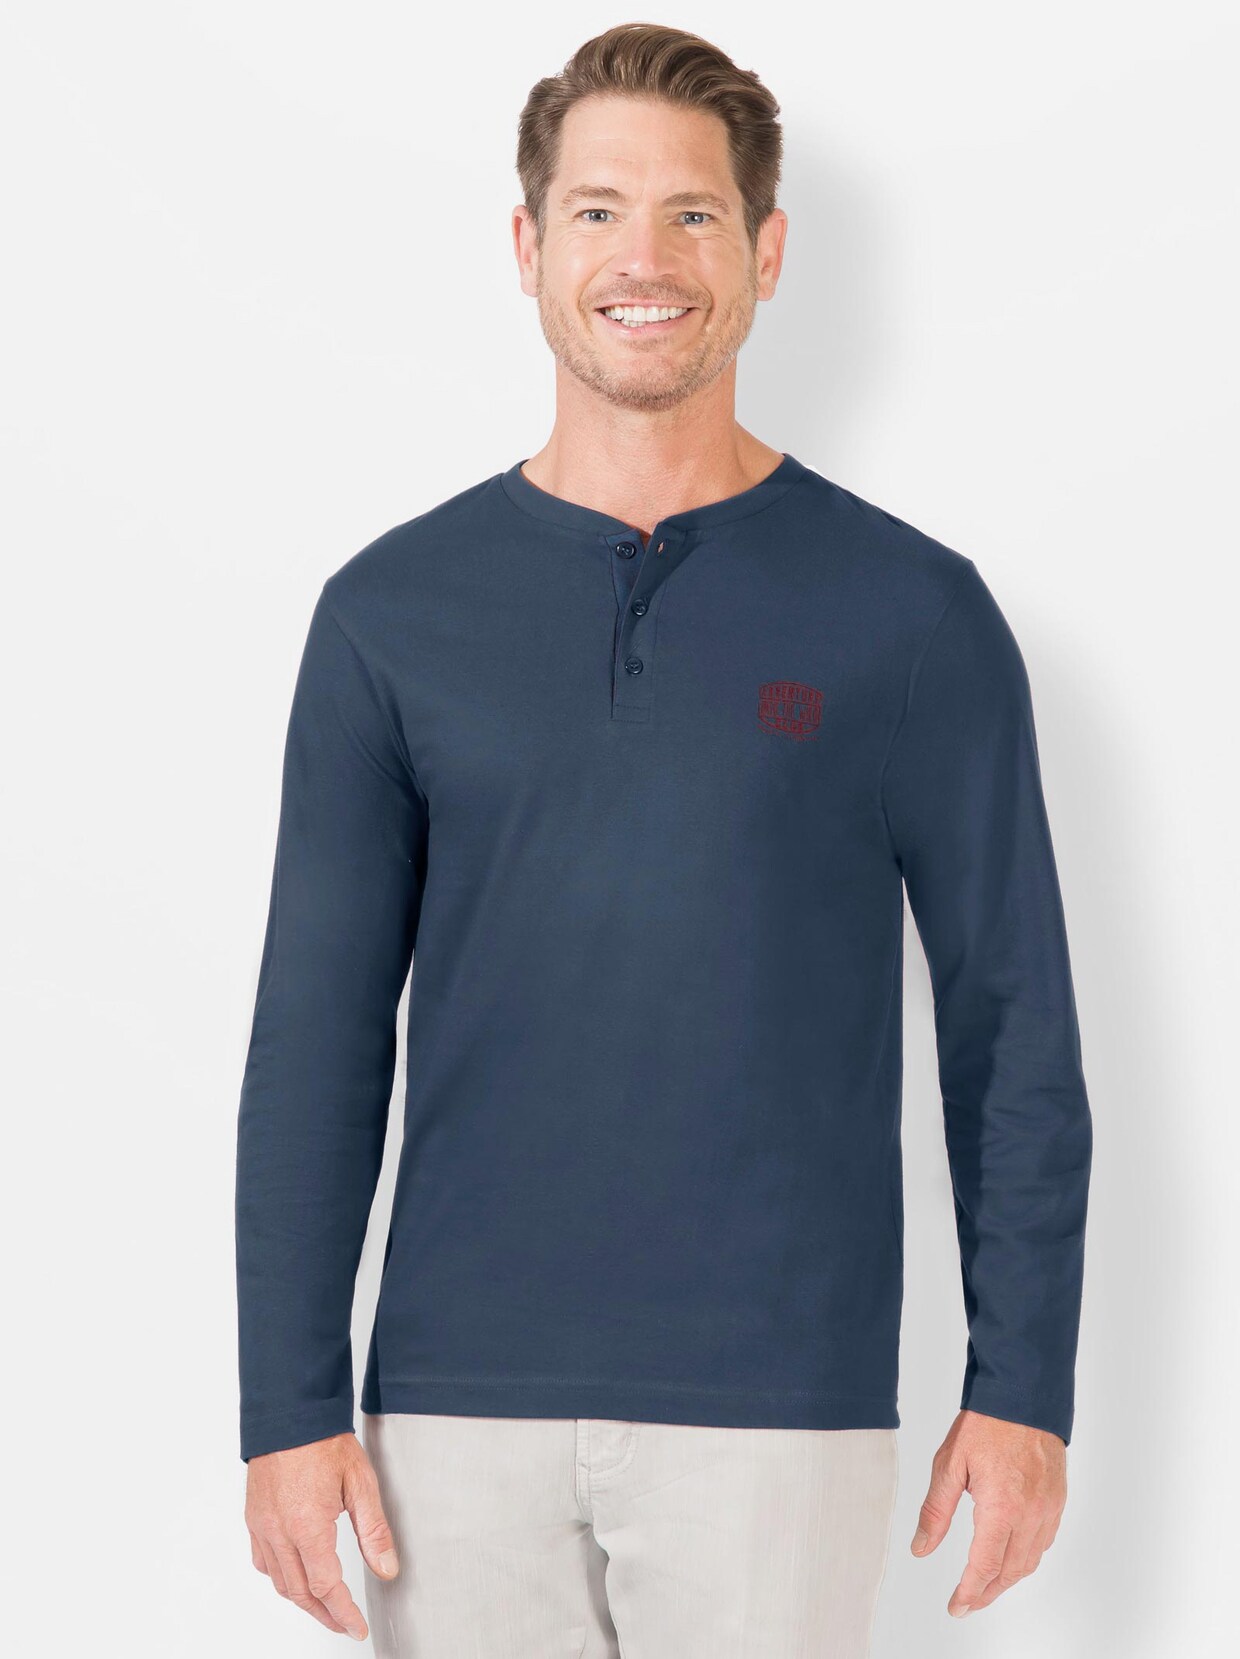 Catamaran Langarm-Shirt - dunkelblau